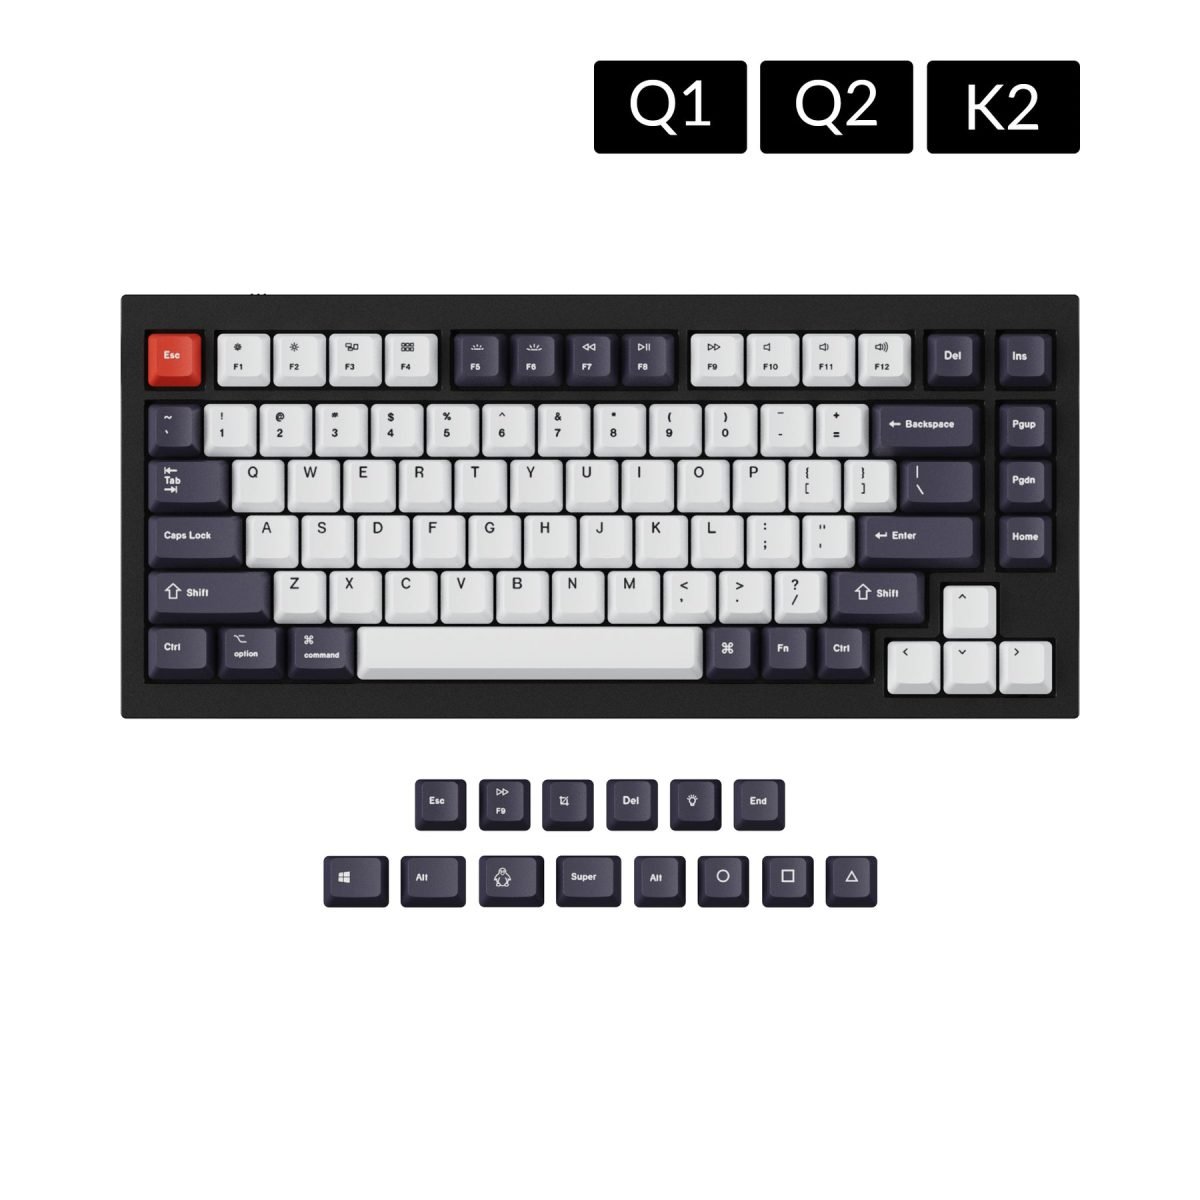 keychron oem keycap set for q1 q2 k2